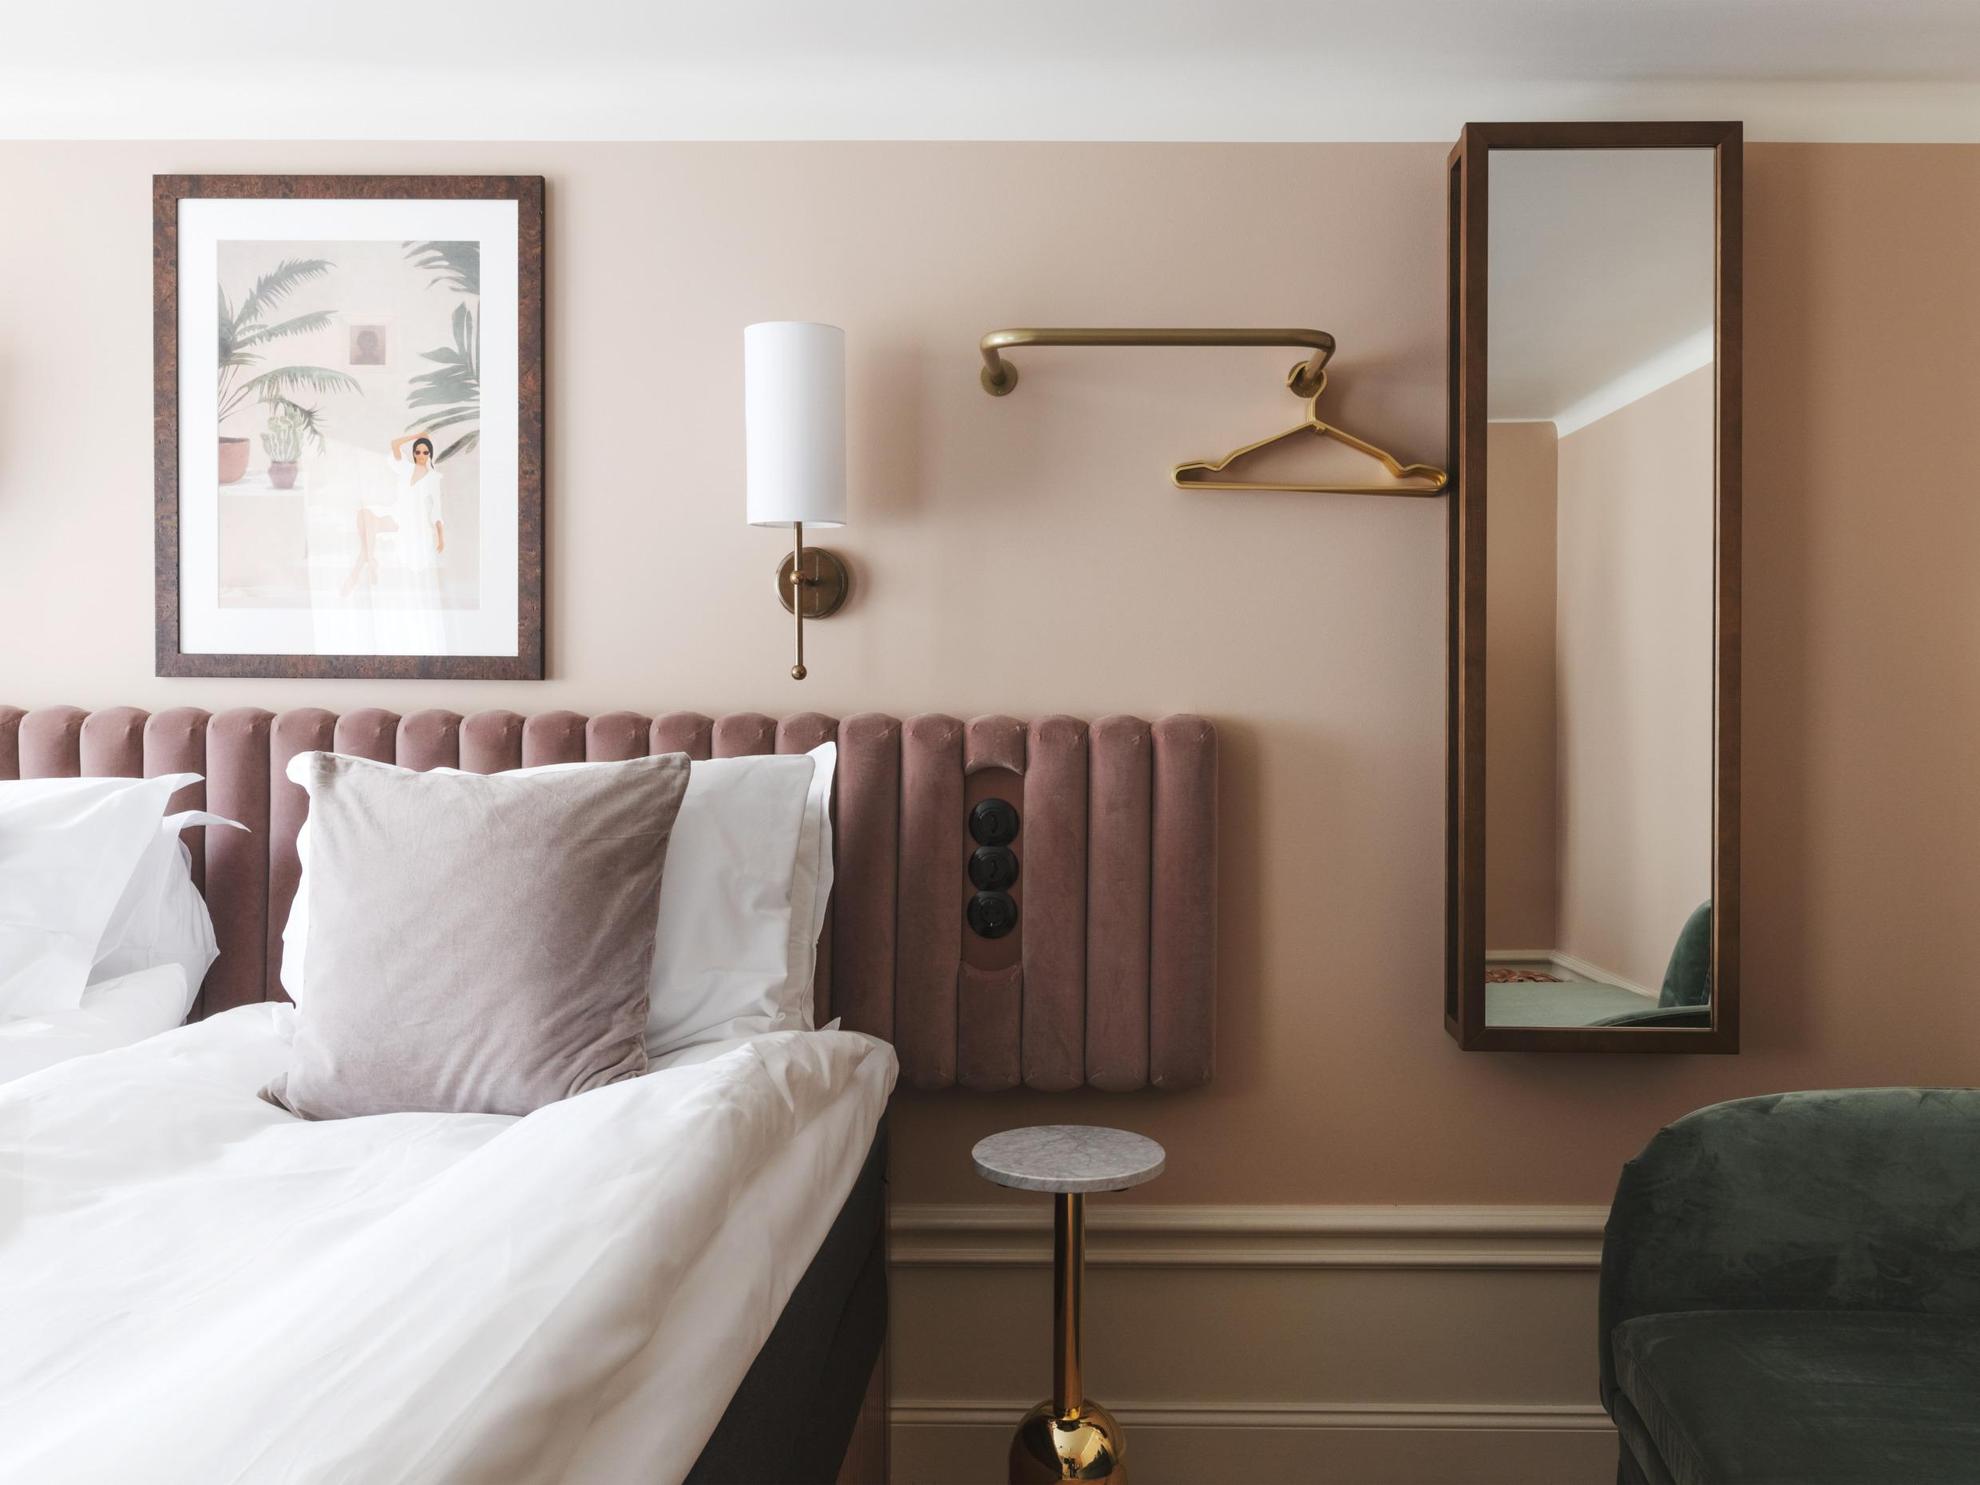 Ein Hotelzimmer mit beige gestrichenen Wänden und einer weißen Decke. Eine Wandlampe aus Messing, ein Gemälde, ein Spiegel und ein Kleiderbügel zieren die Wände neben dem Doppelbett.